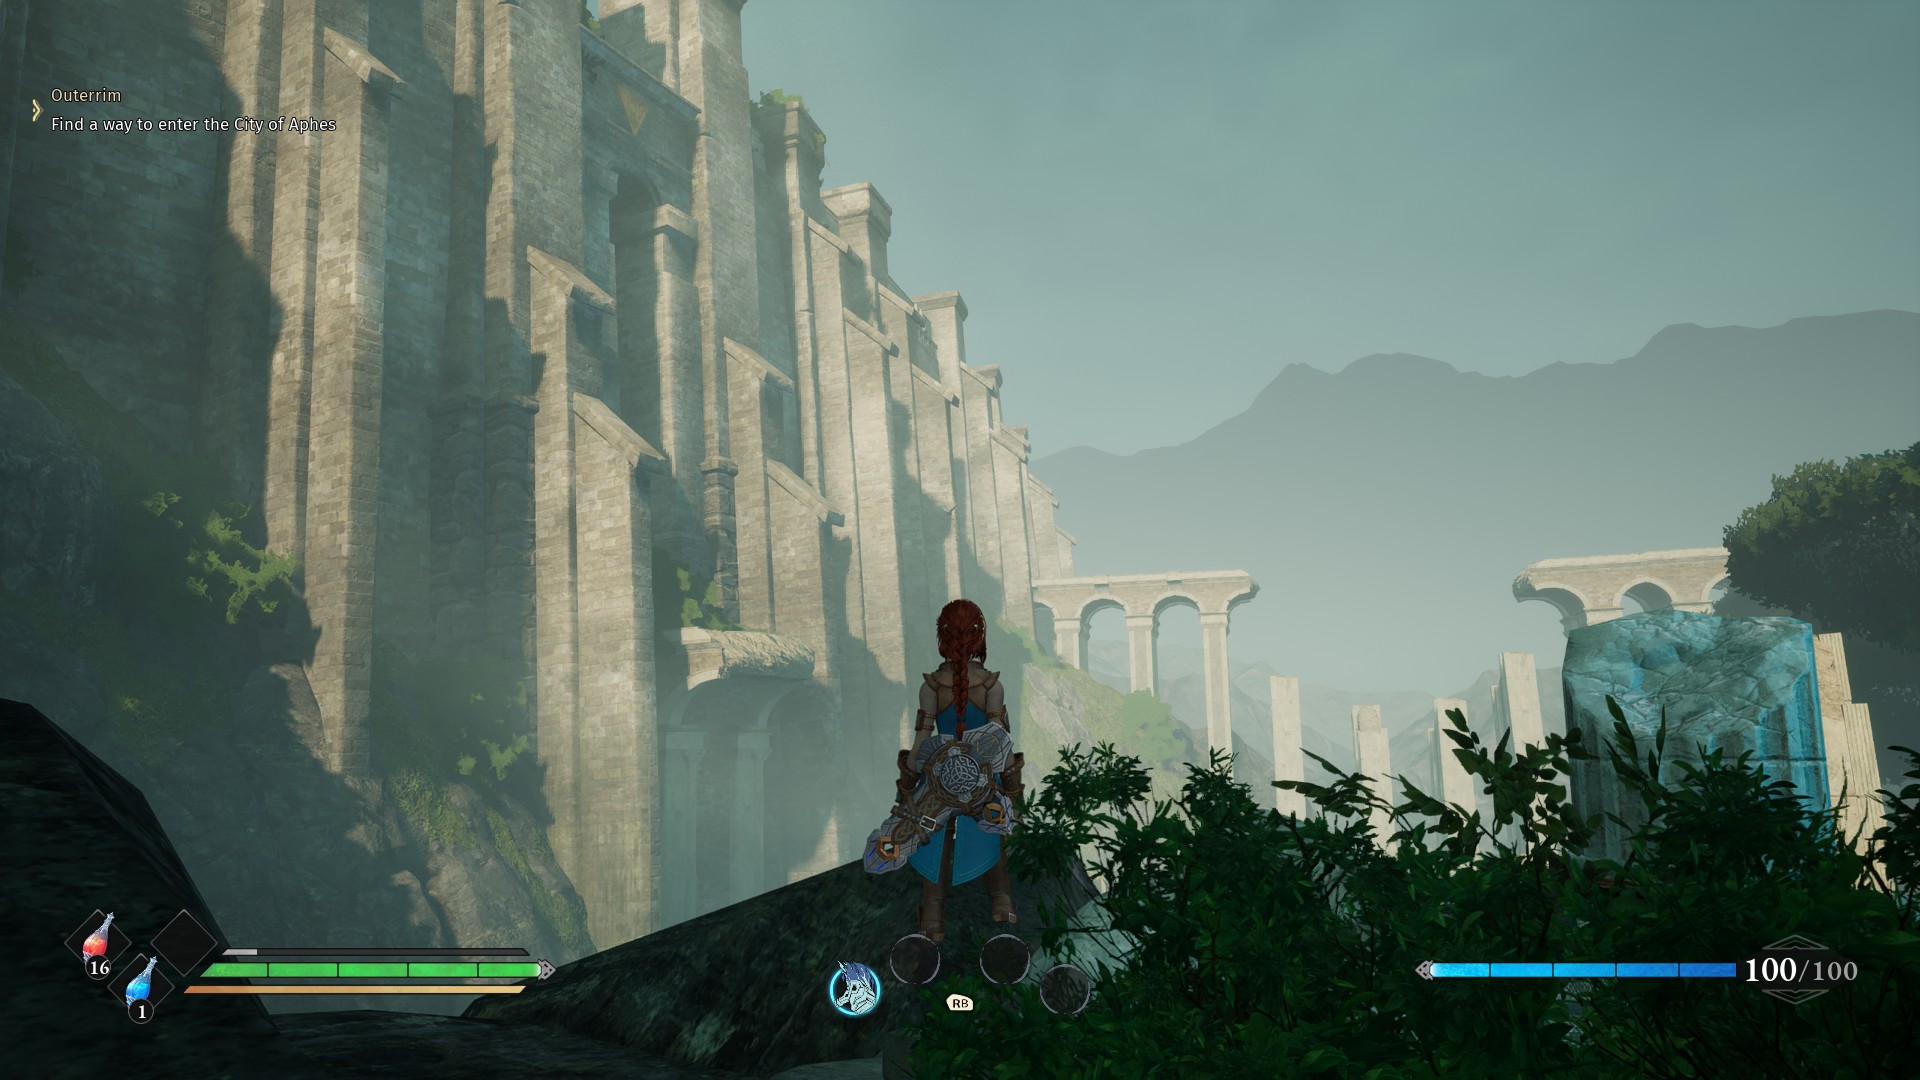 Les environnements du jeu sont souvent colossaux, comme cette vue sur les remparts de la ville